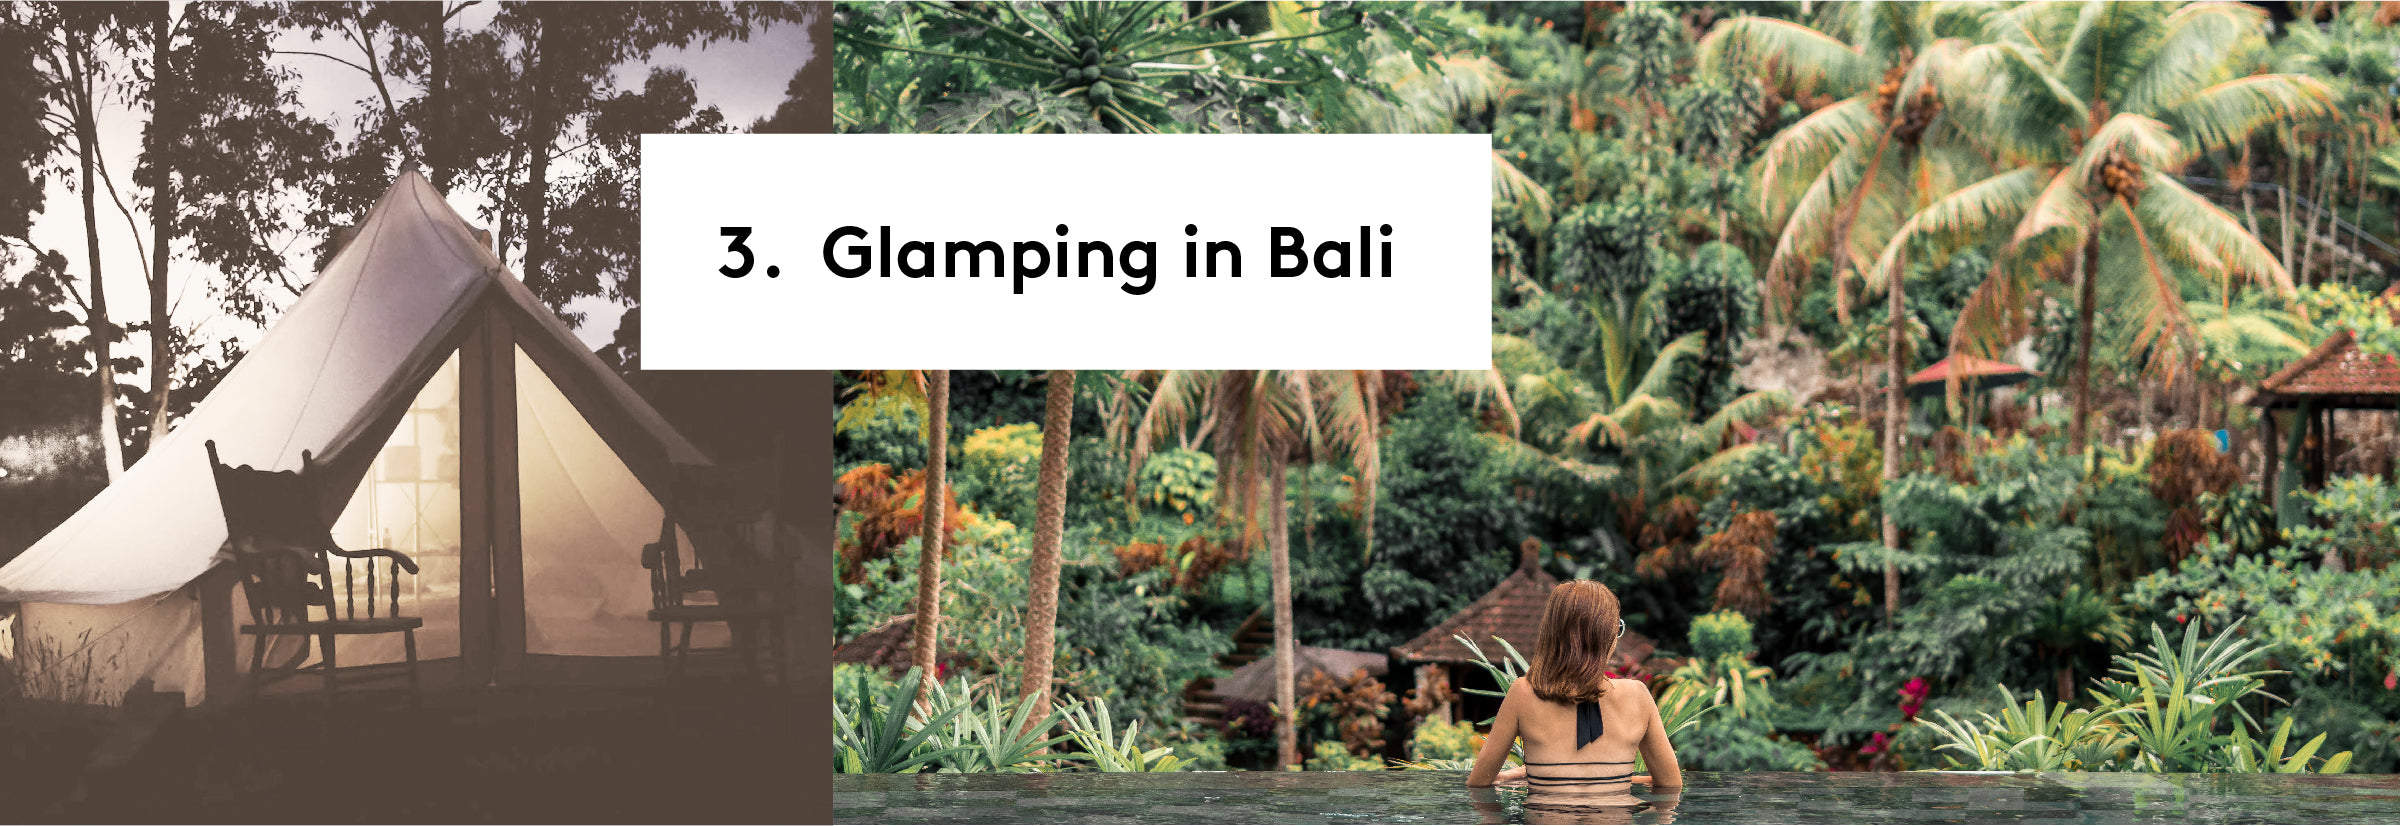 3. Glamping in Bali